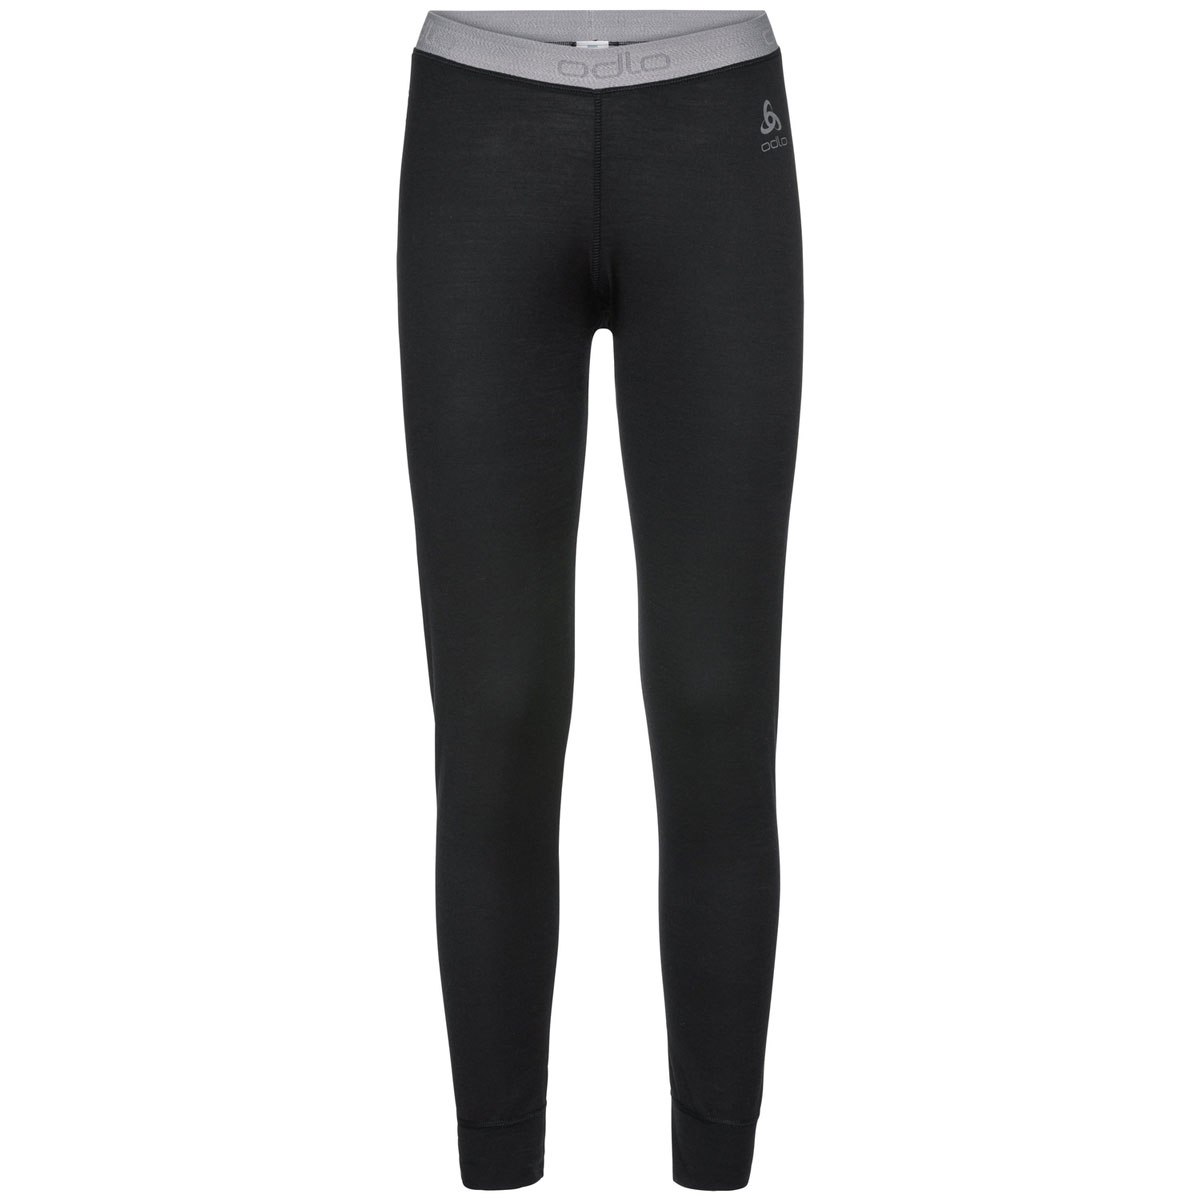 Produktbild von Odlo Damen NATURAL 100% MERINO WARM Sportunterwäsche Hose - schwarz